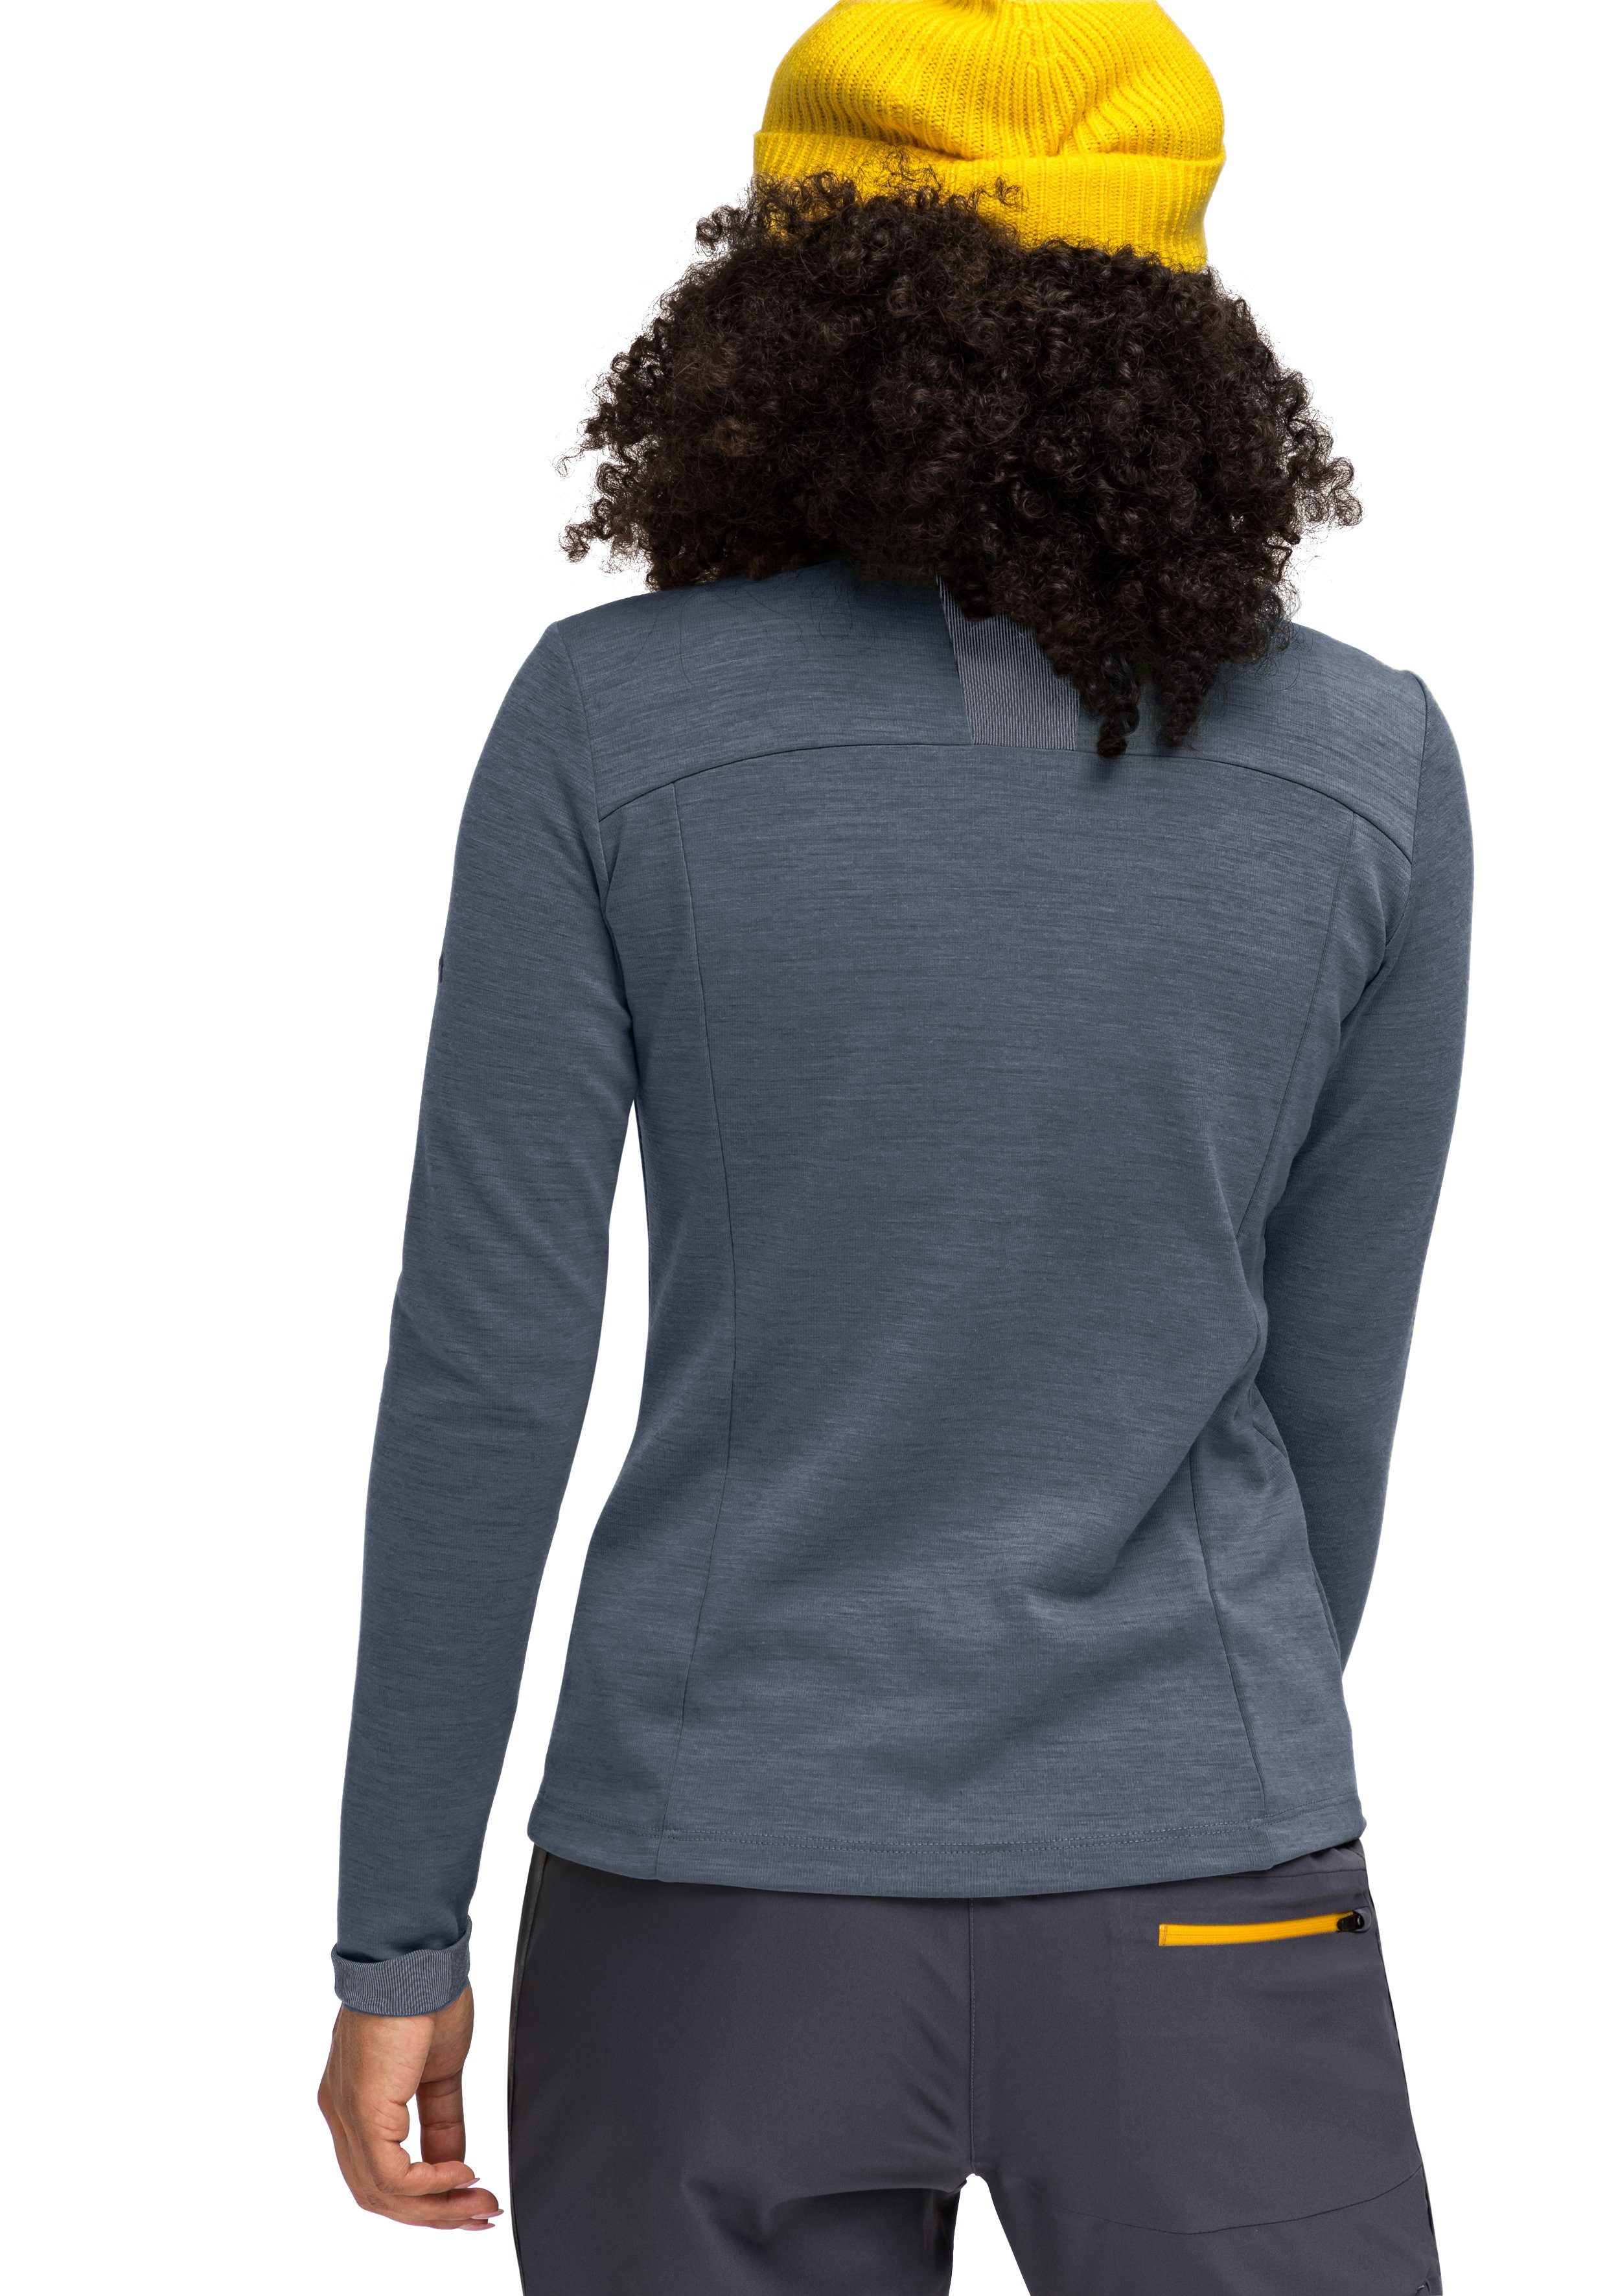 Skutvik Midlayer-Jacke ideal Damen, für graublau Sports Outdoor-Aktivitäten Funktionsshirt für Maier W